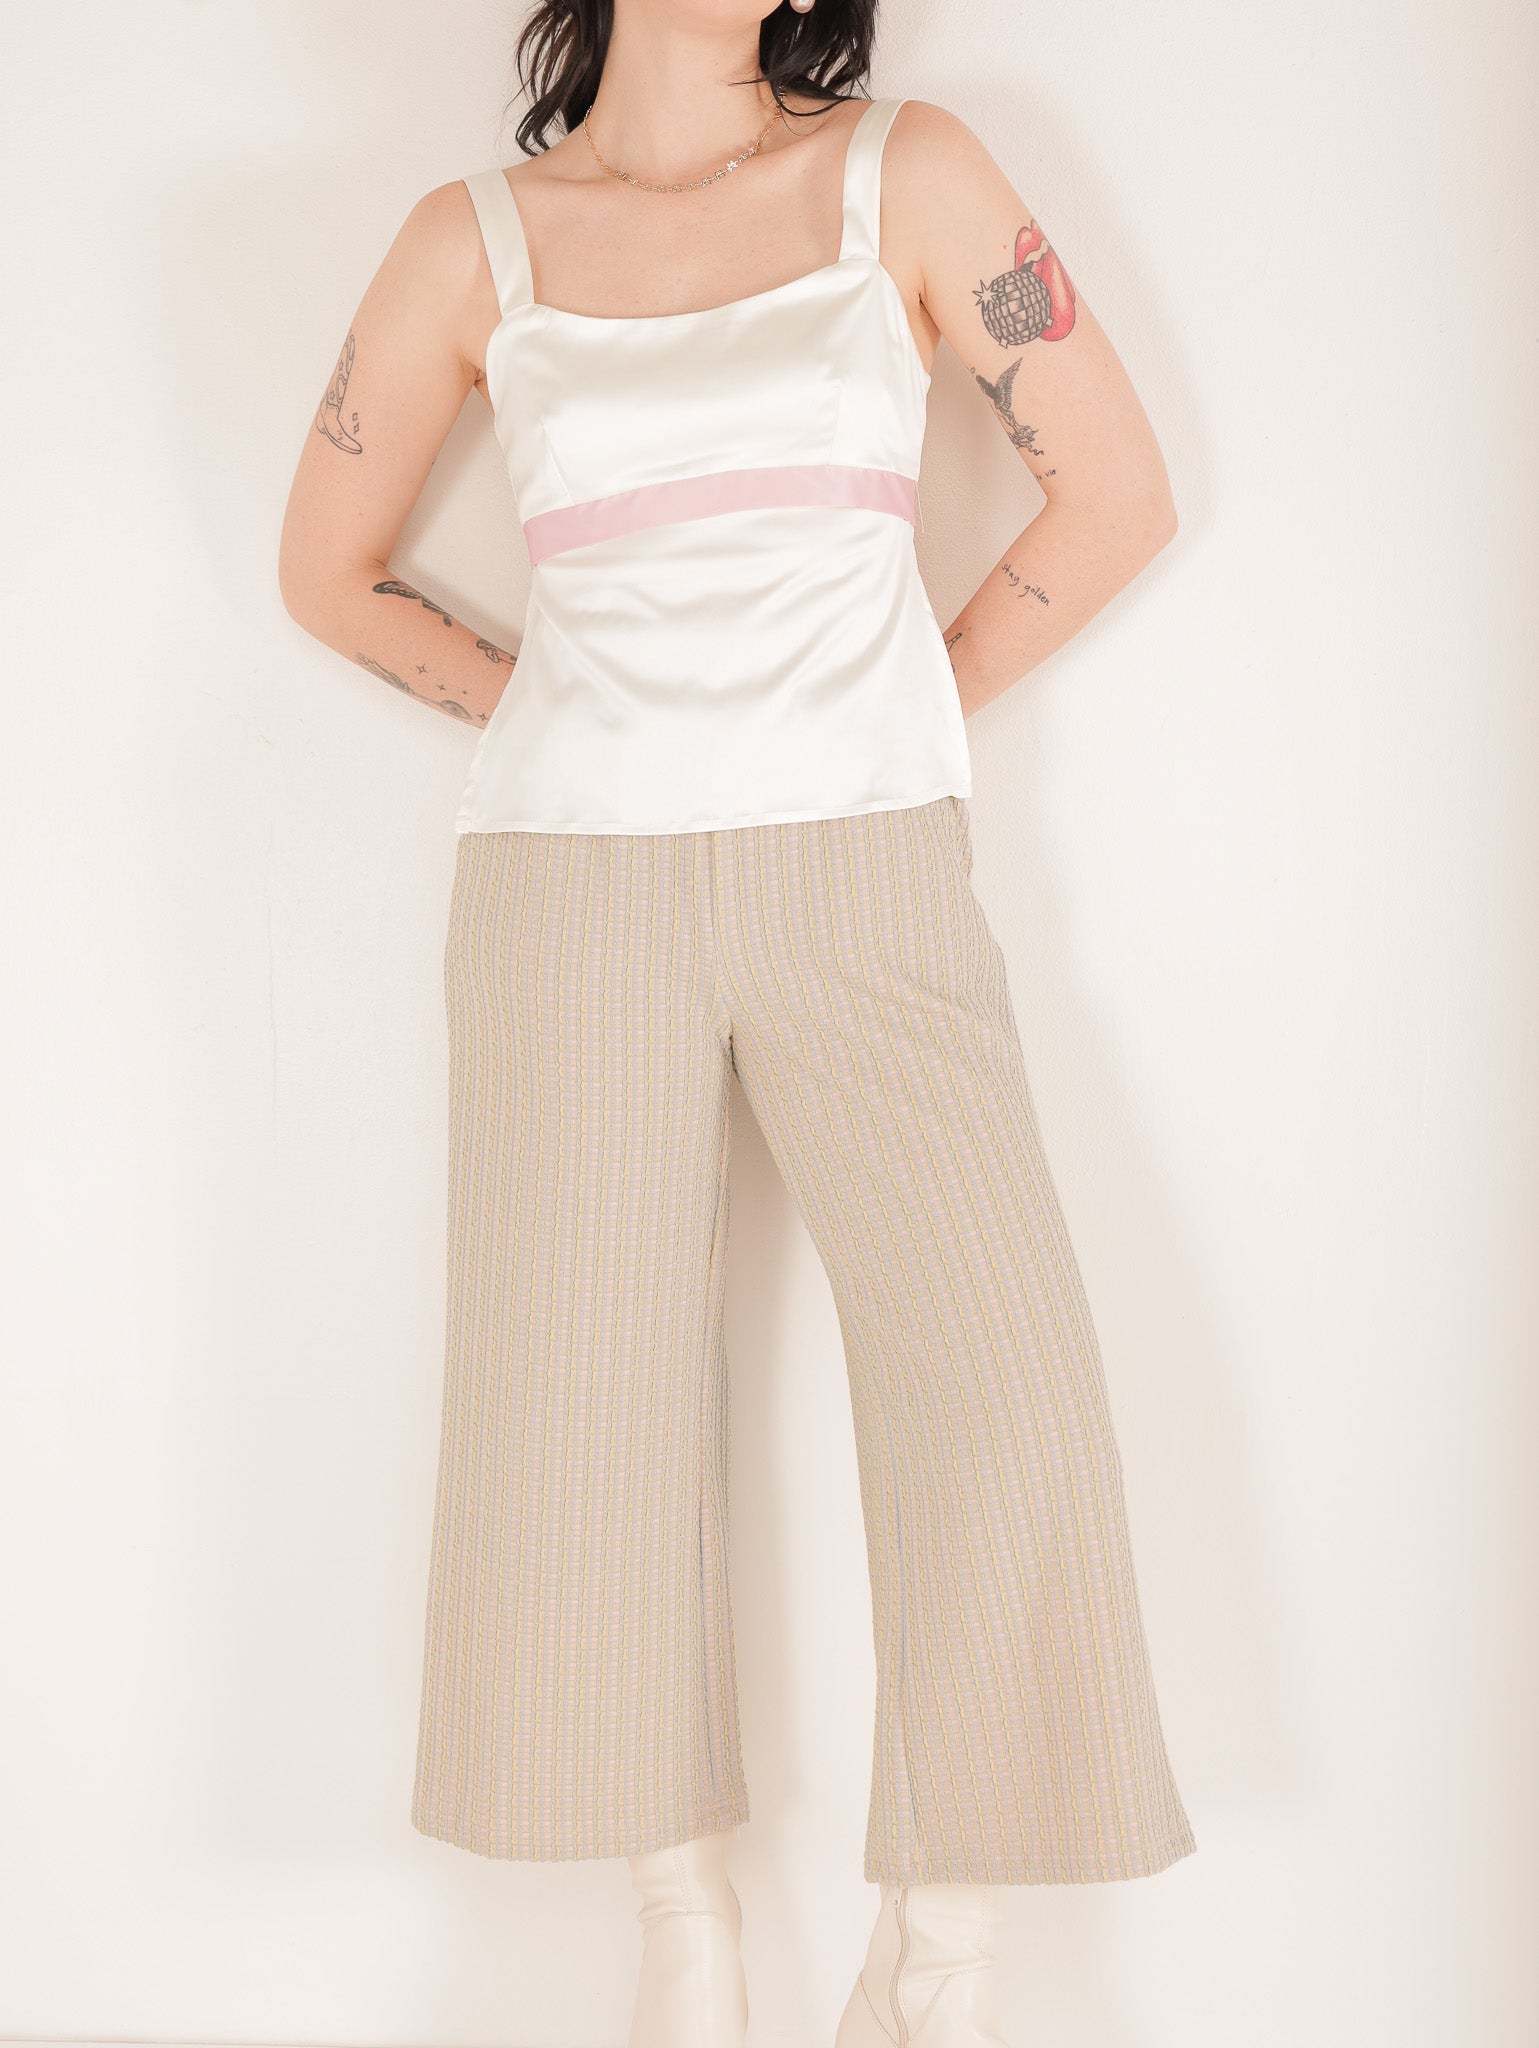 Molly Green - Irene Comfy Pants - Pants